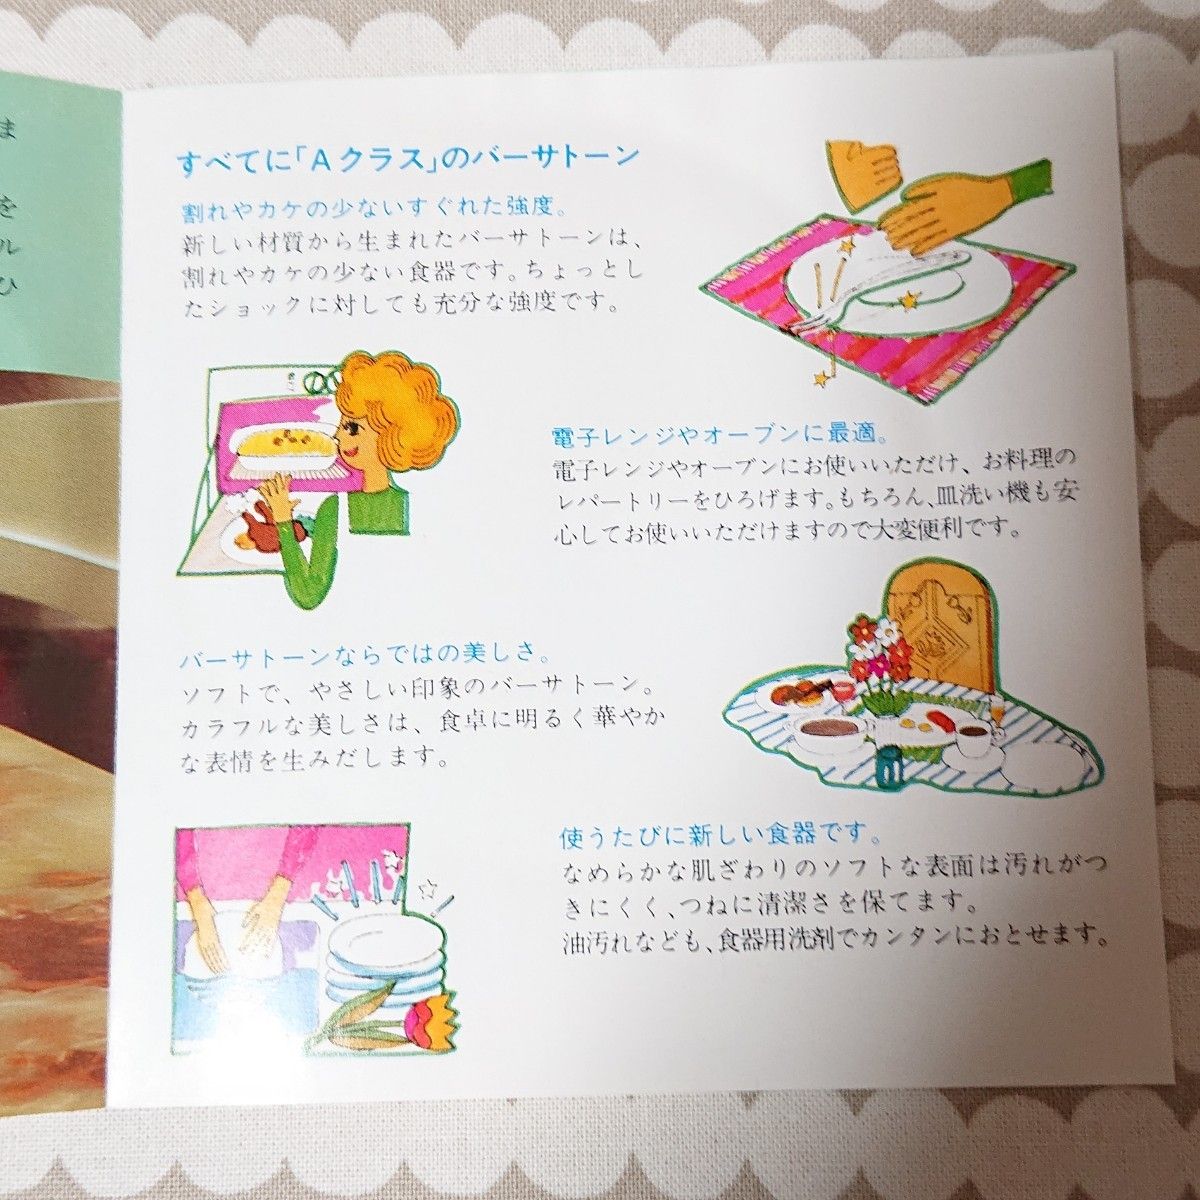 【レア】Noritake ノリタケ バーサトーン シェル型プレート2枚 クローバー 昭和レトロ 喫茶店 未使用品